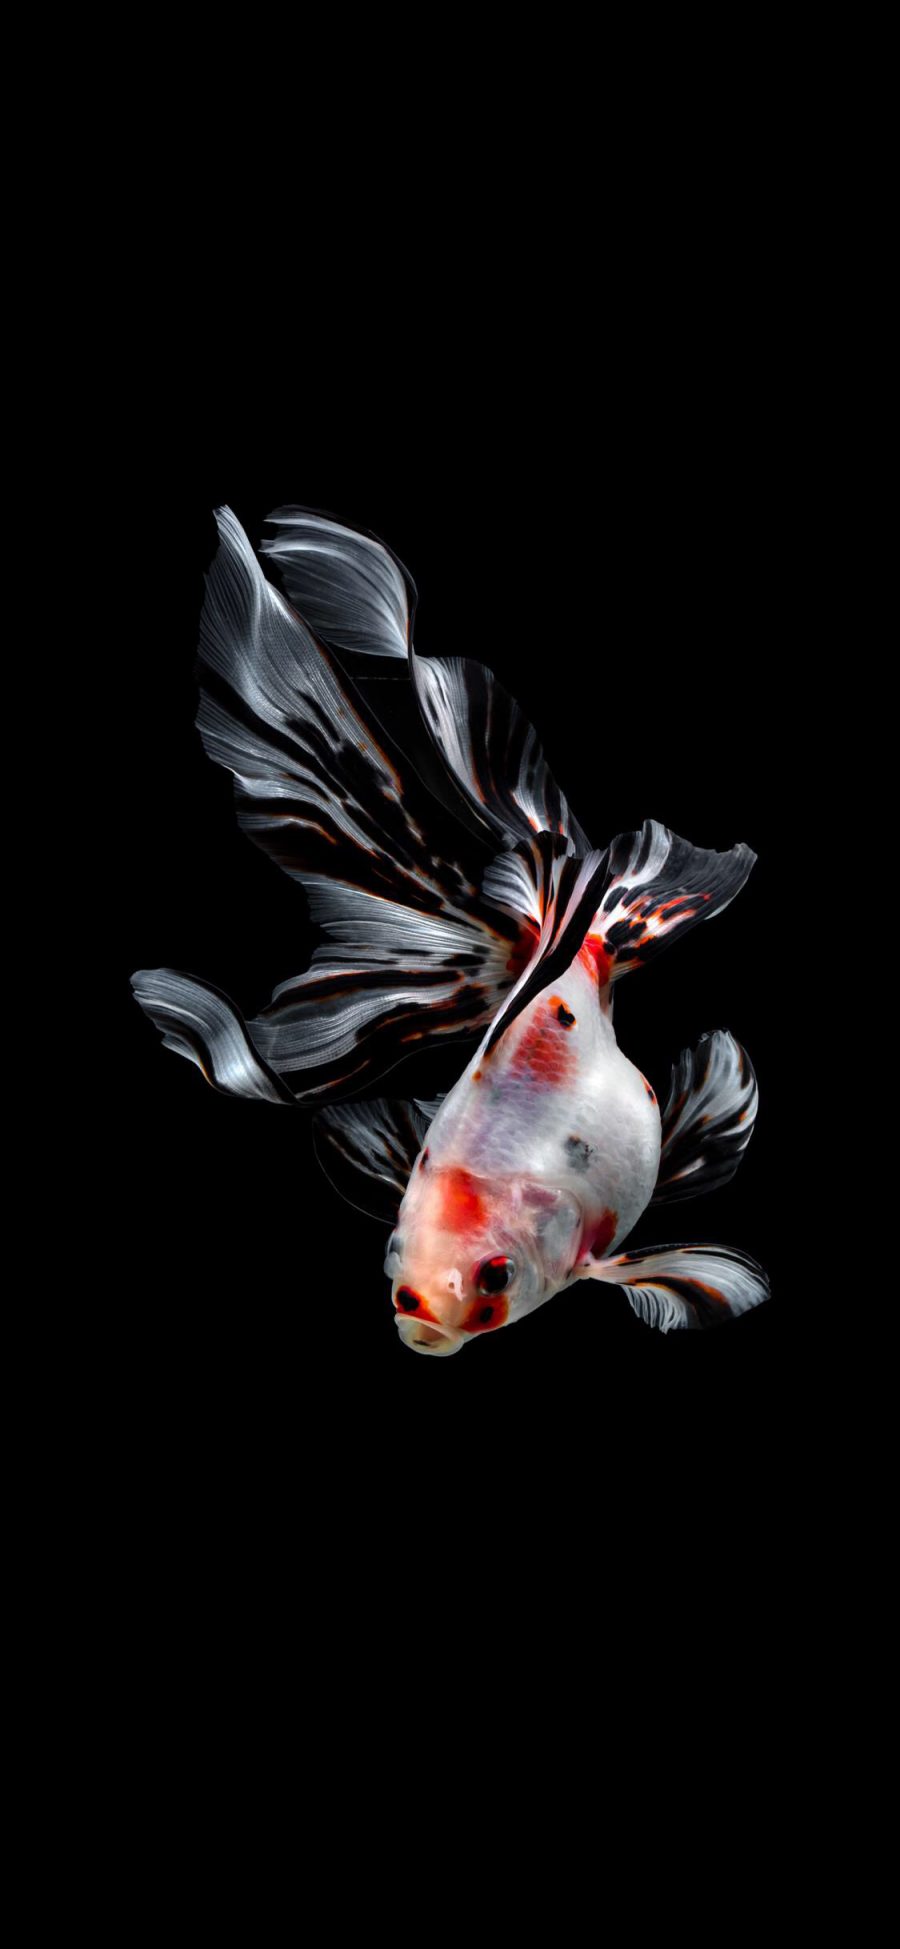 [2436×1125]金鱼 可爱 萌 尾巴 斑纹 苹果手机壁纸图片